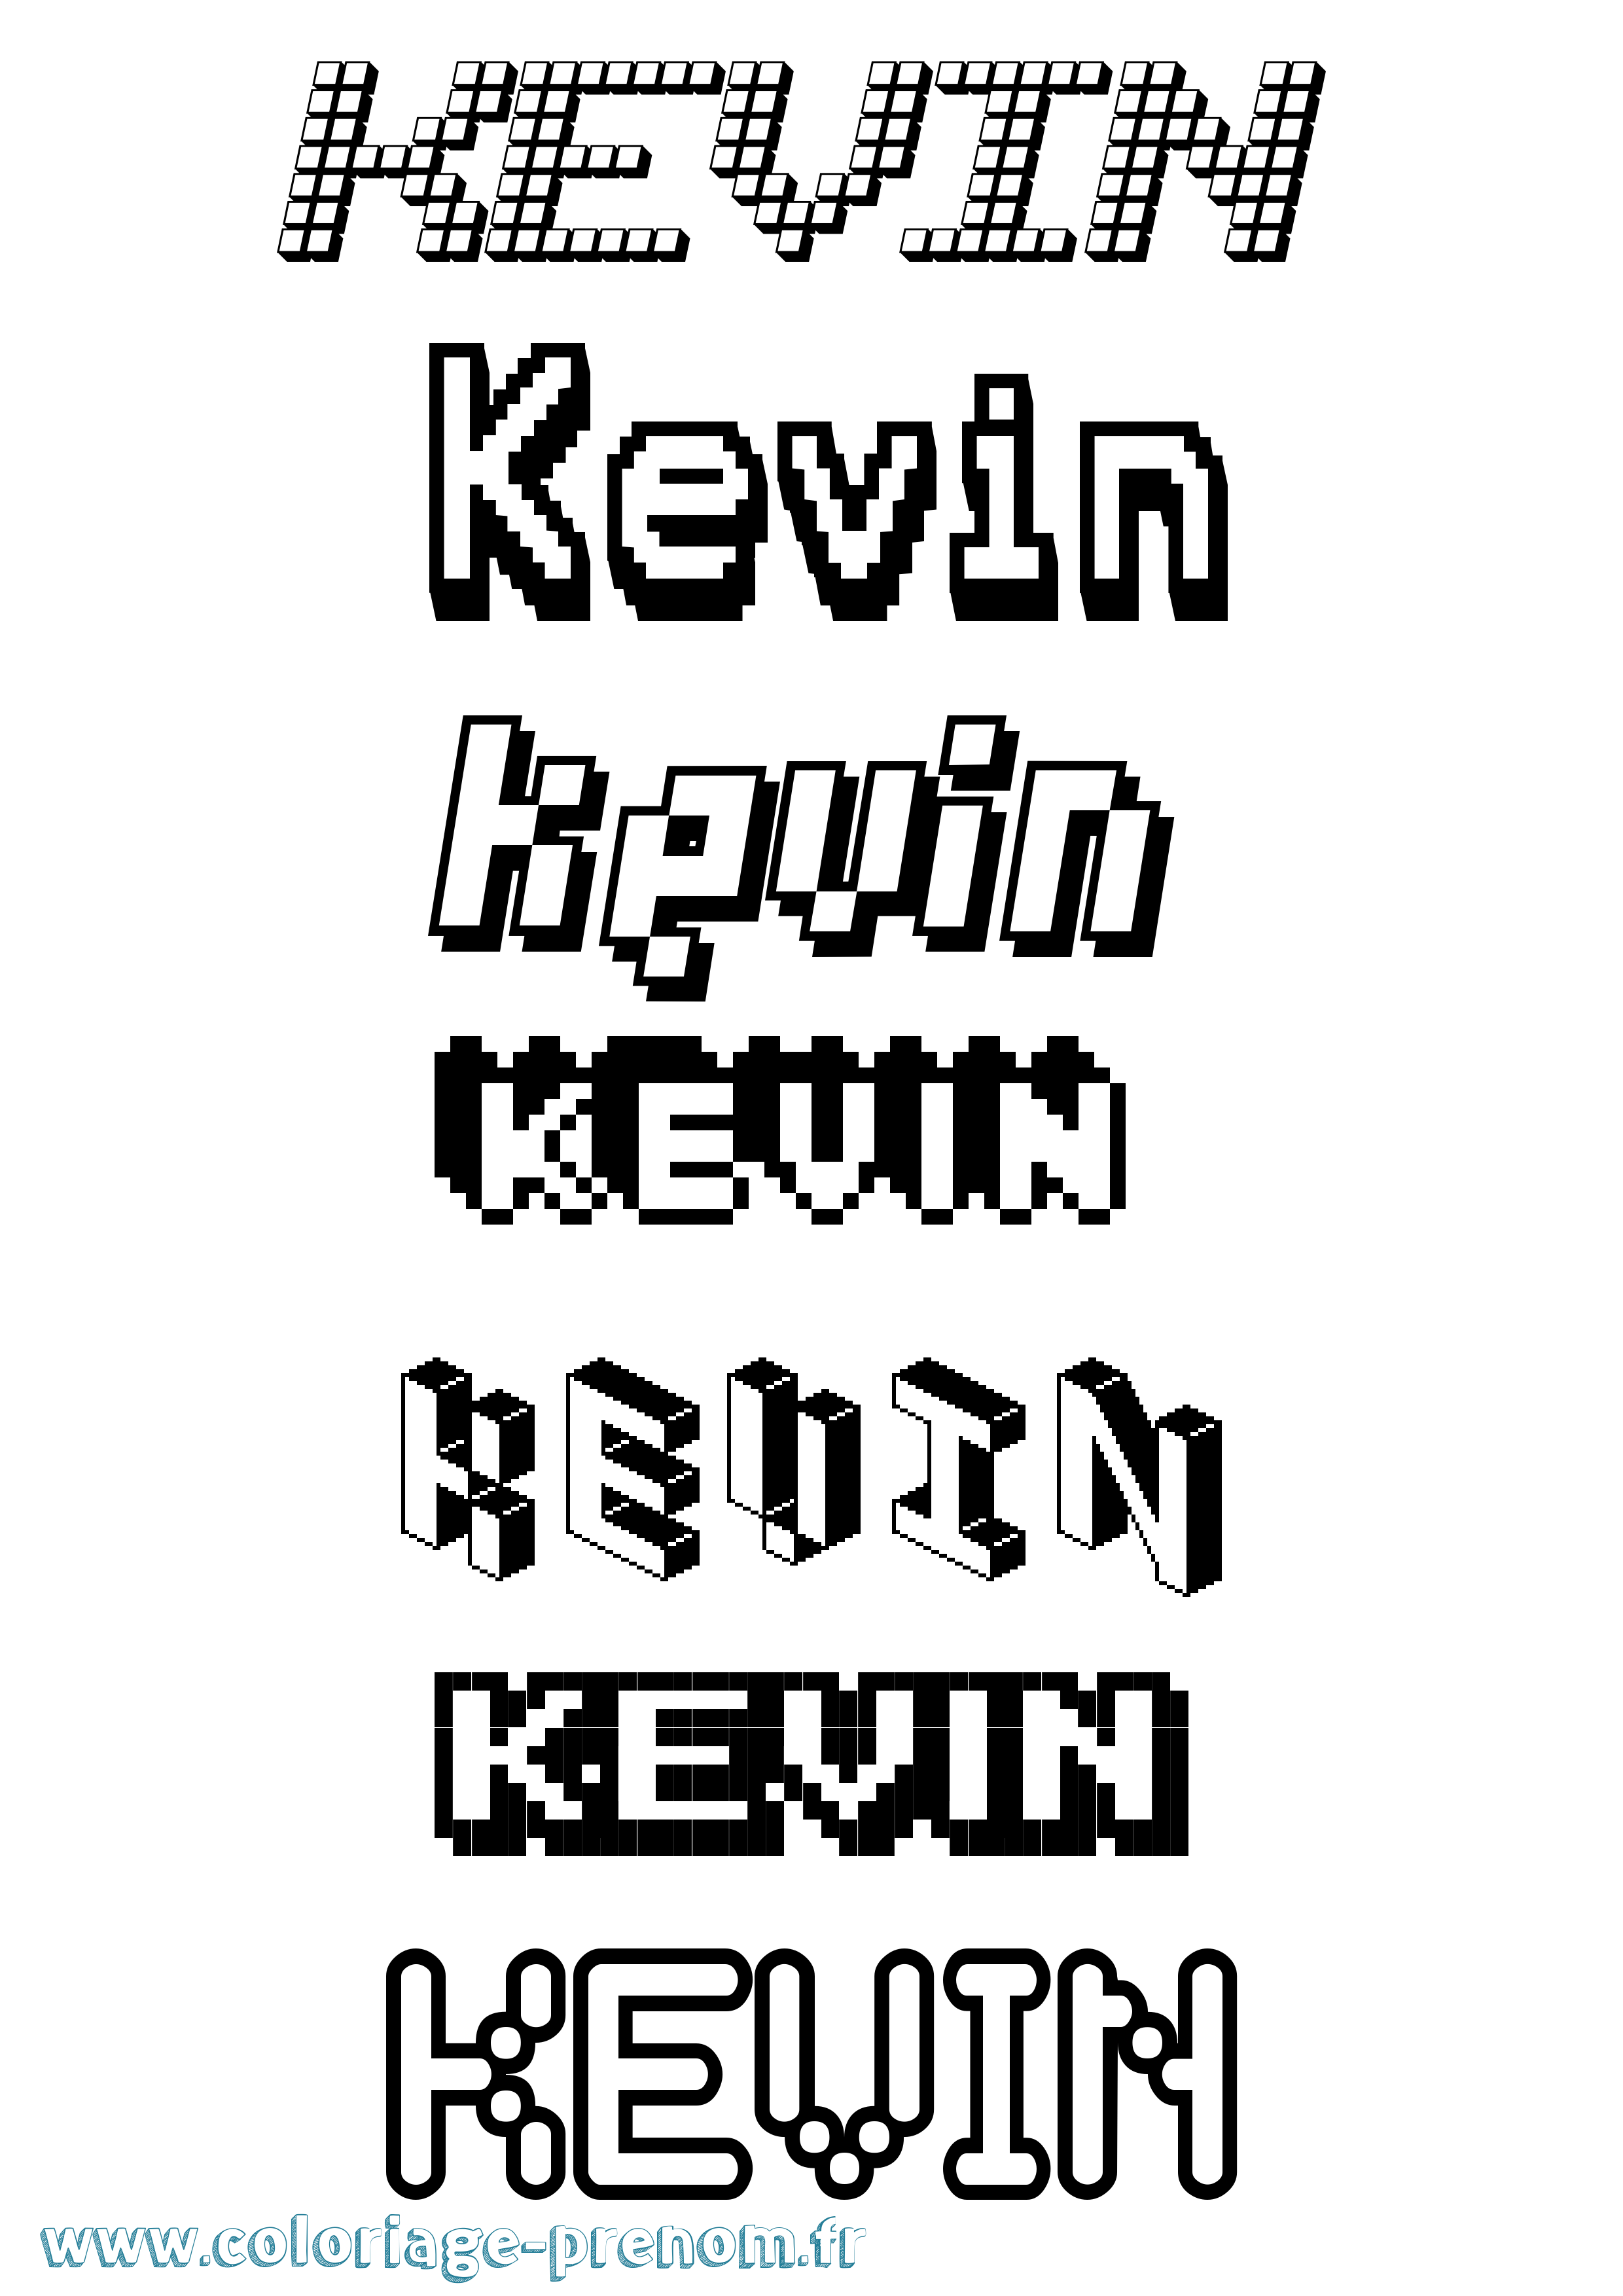 Coloriage prénom Kevin Pixel